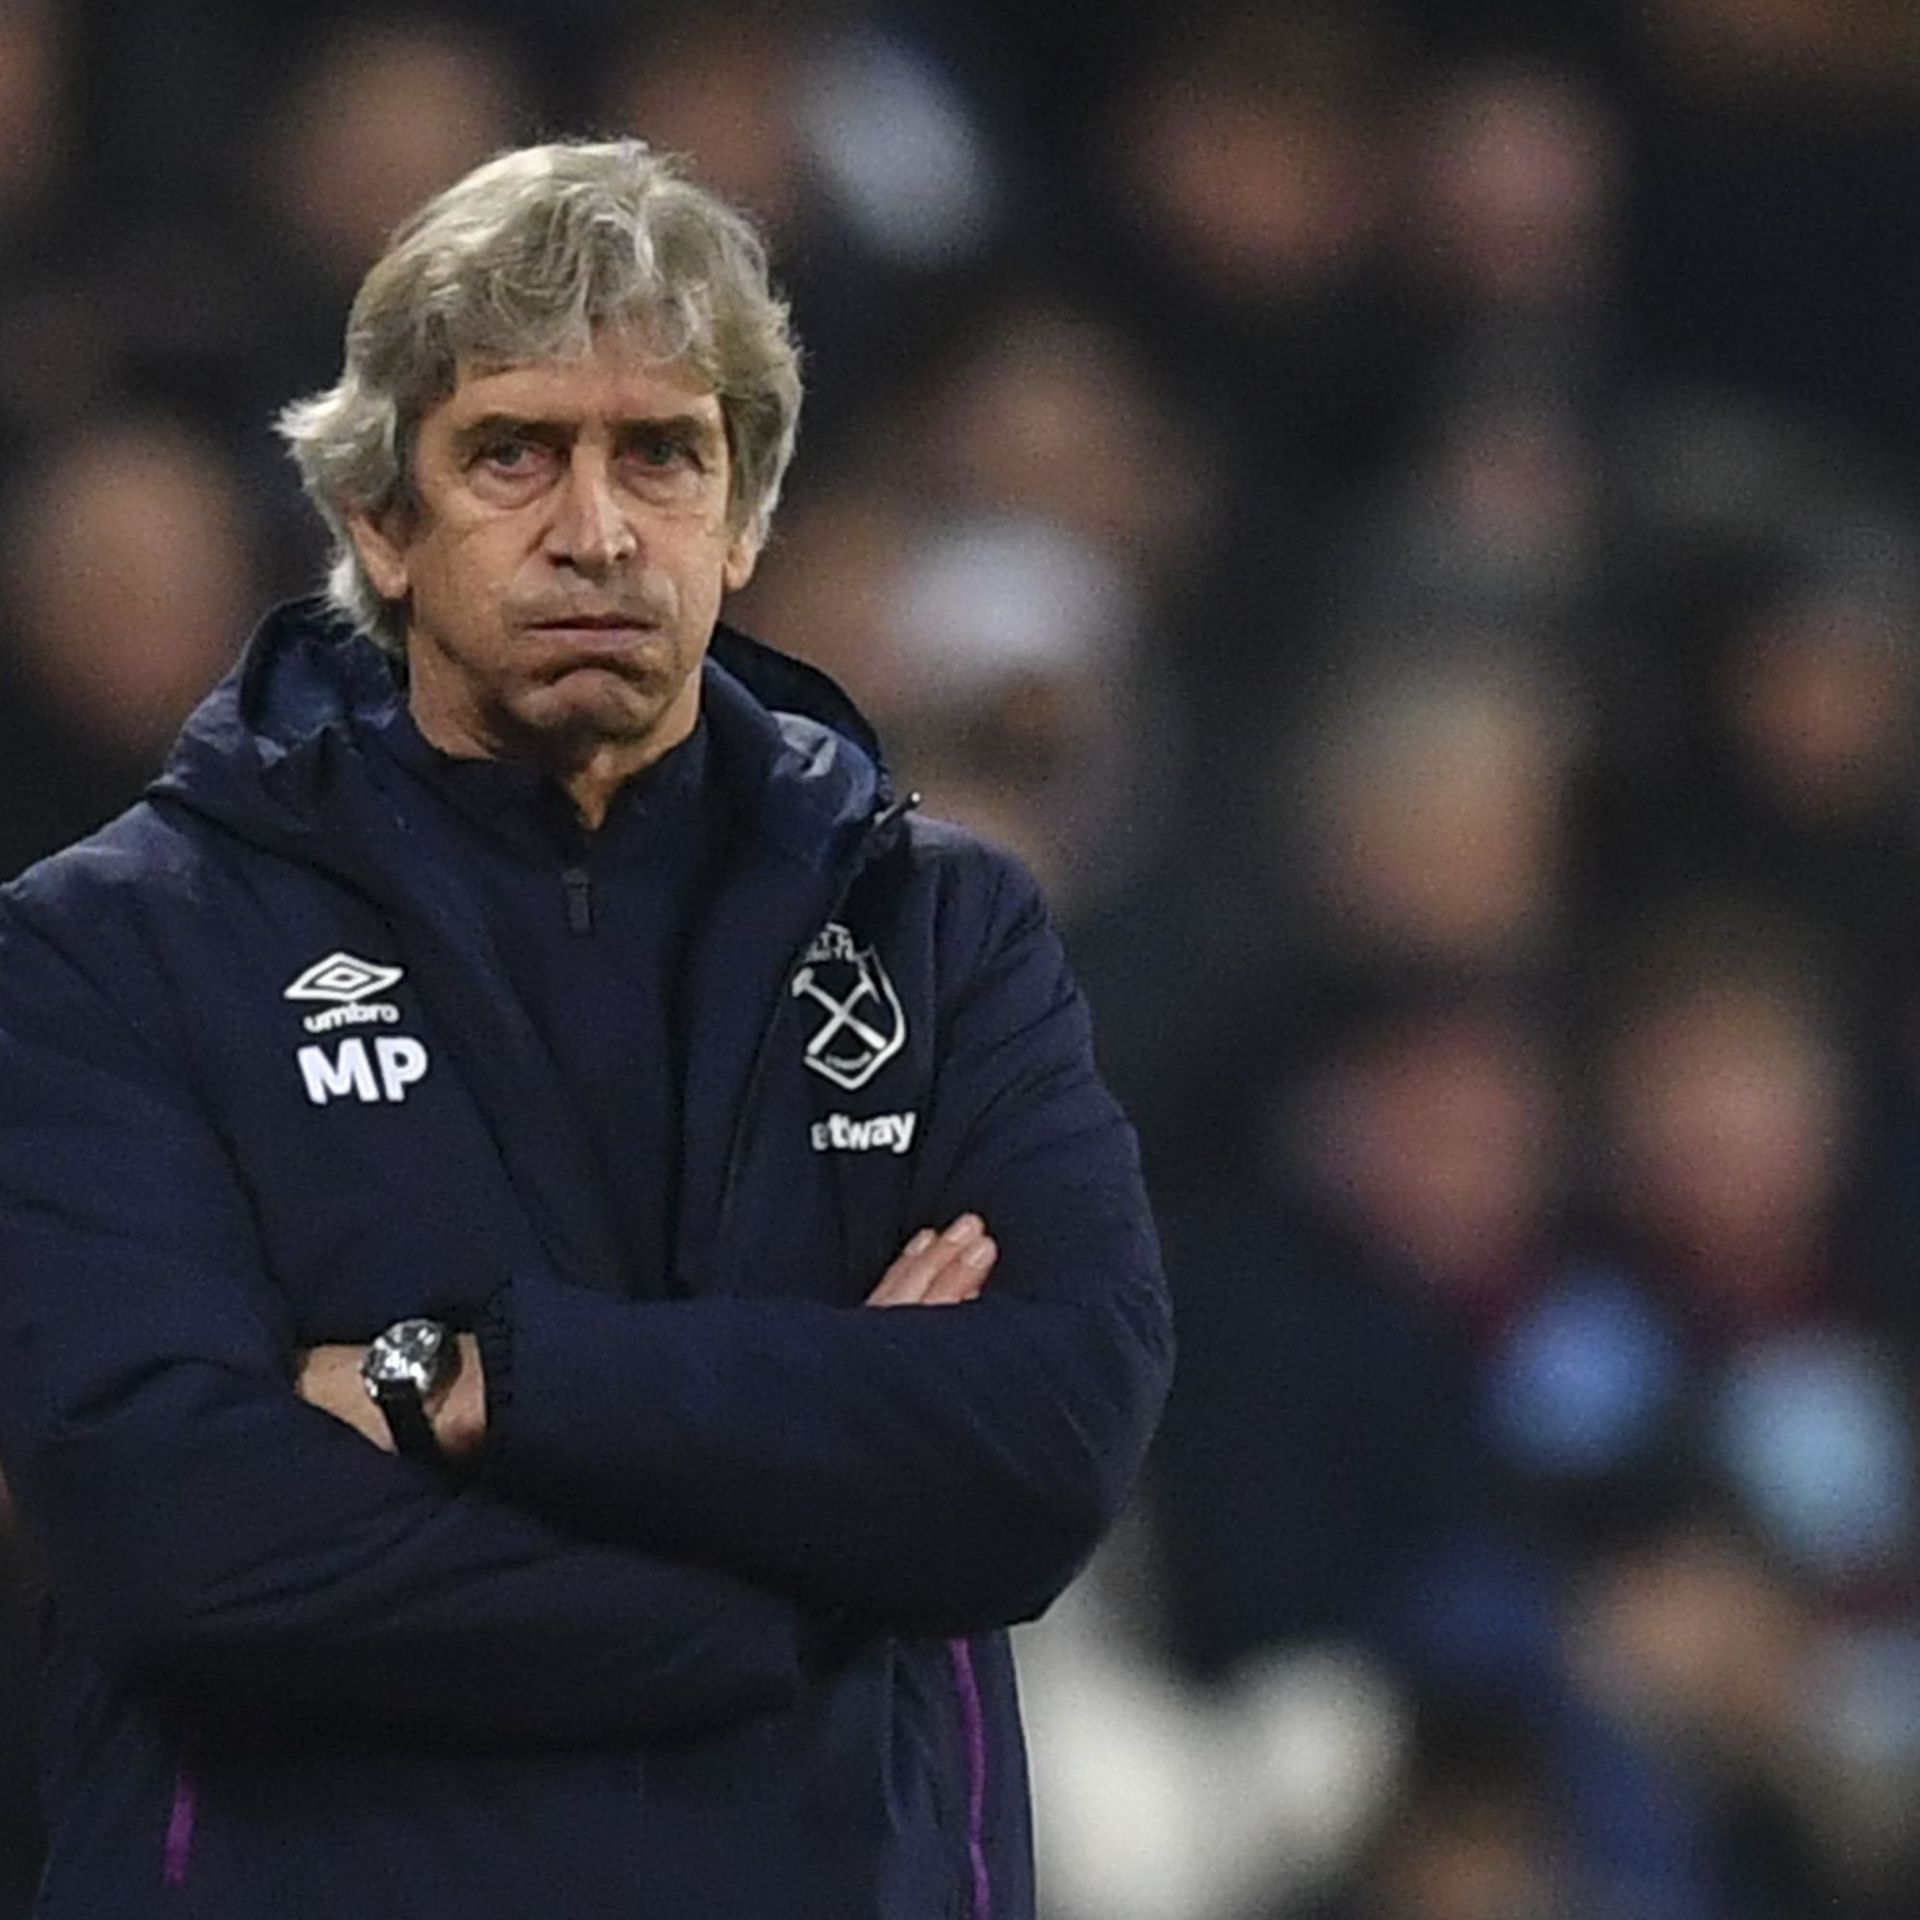 West Ham se sépare de son entraîneur Manuel Pellegrini - Le Soir